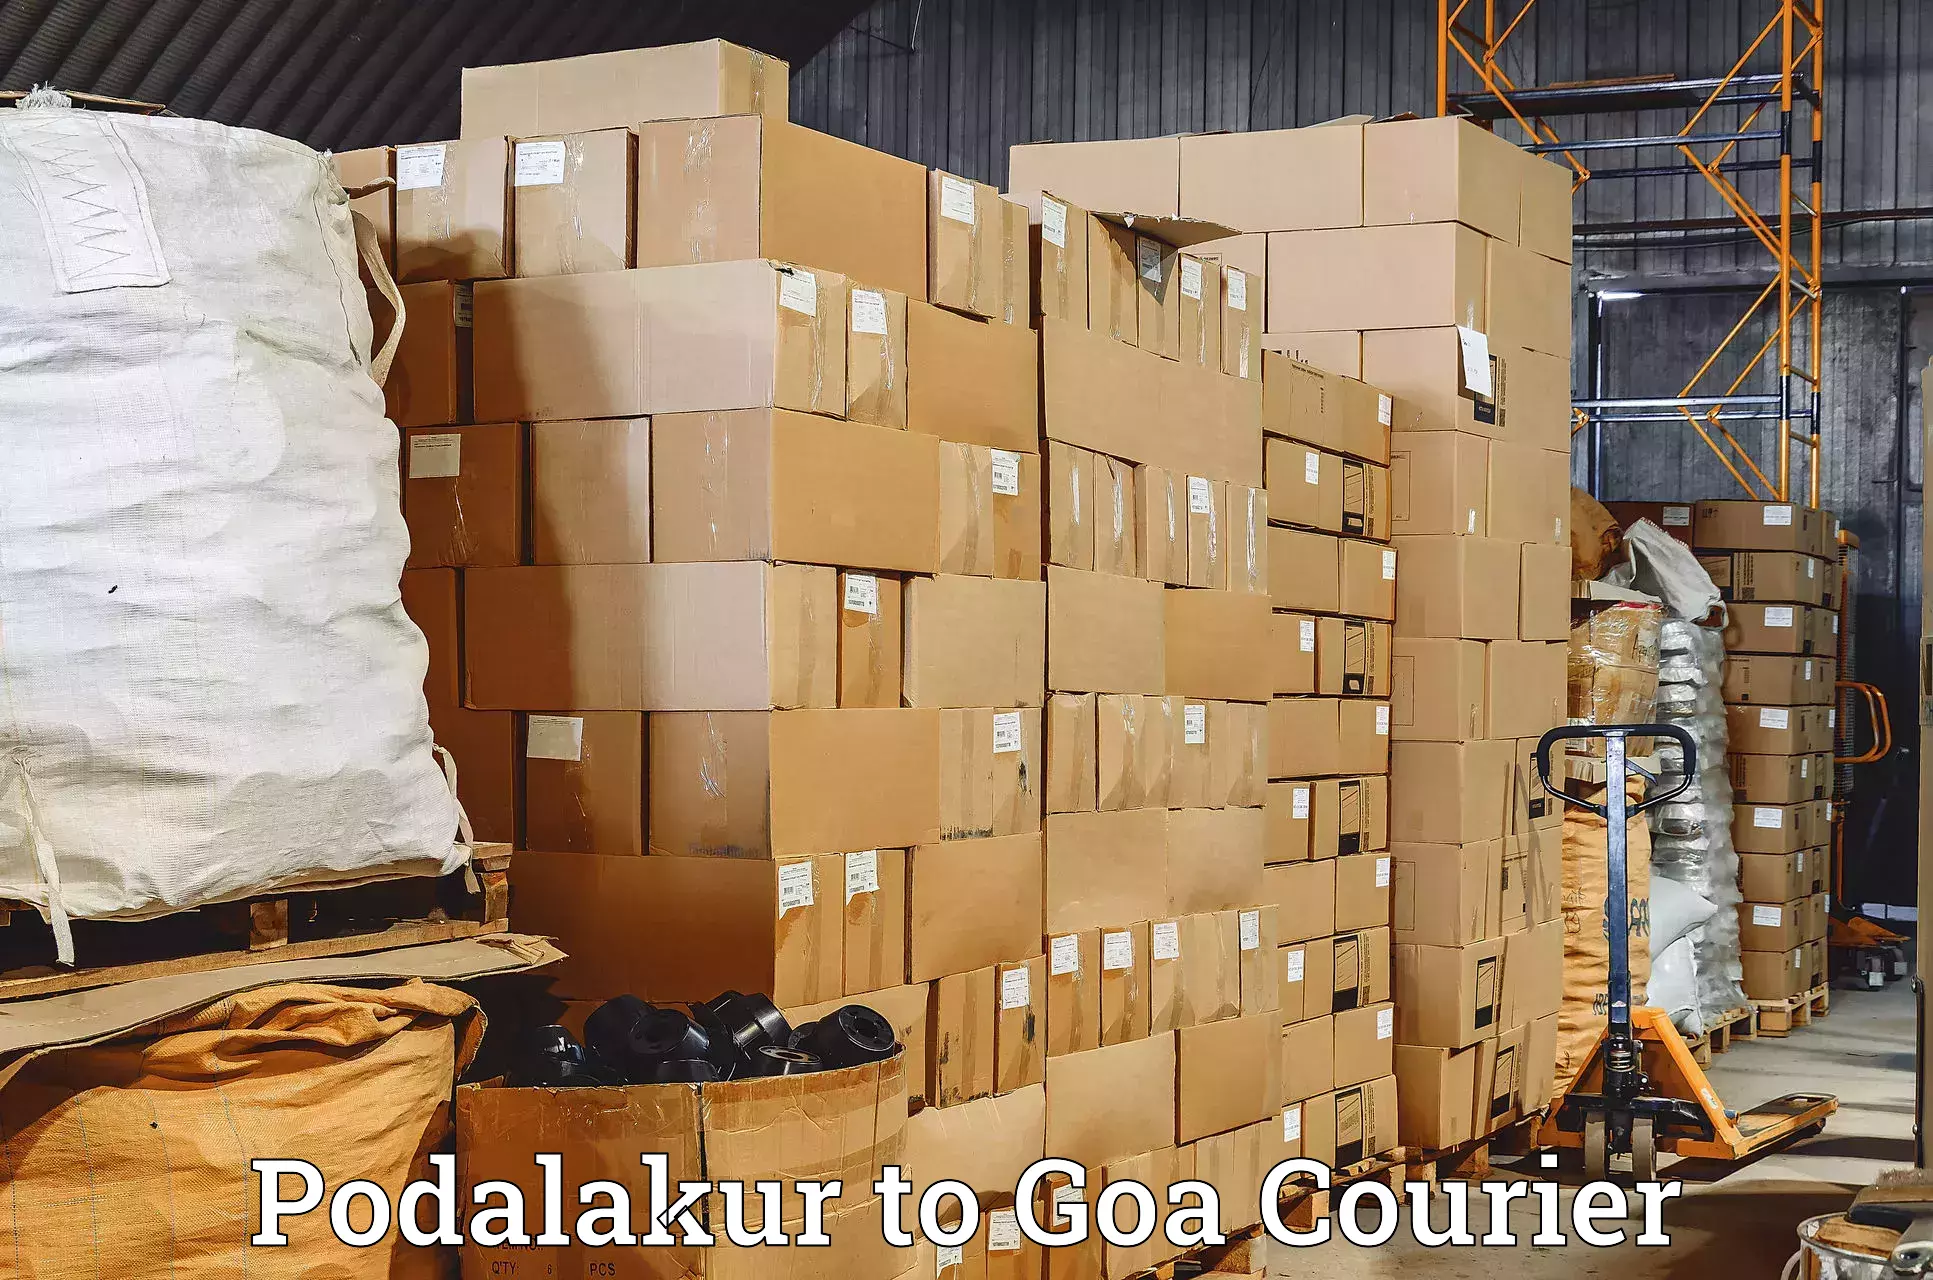 Courier app Podalakur to Vasco da Gama